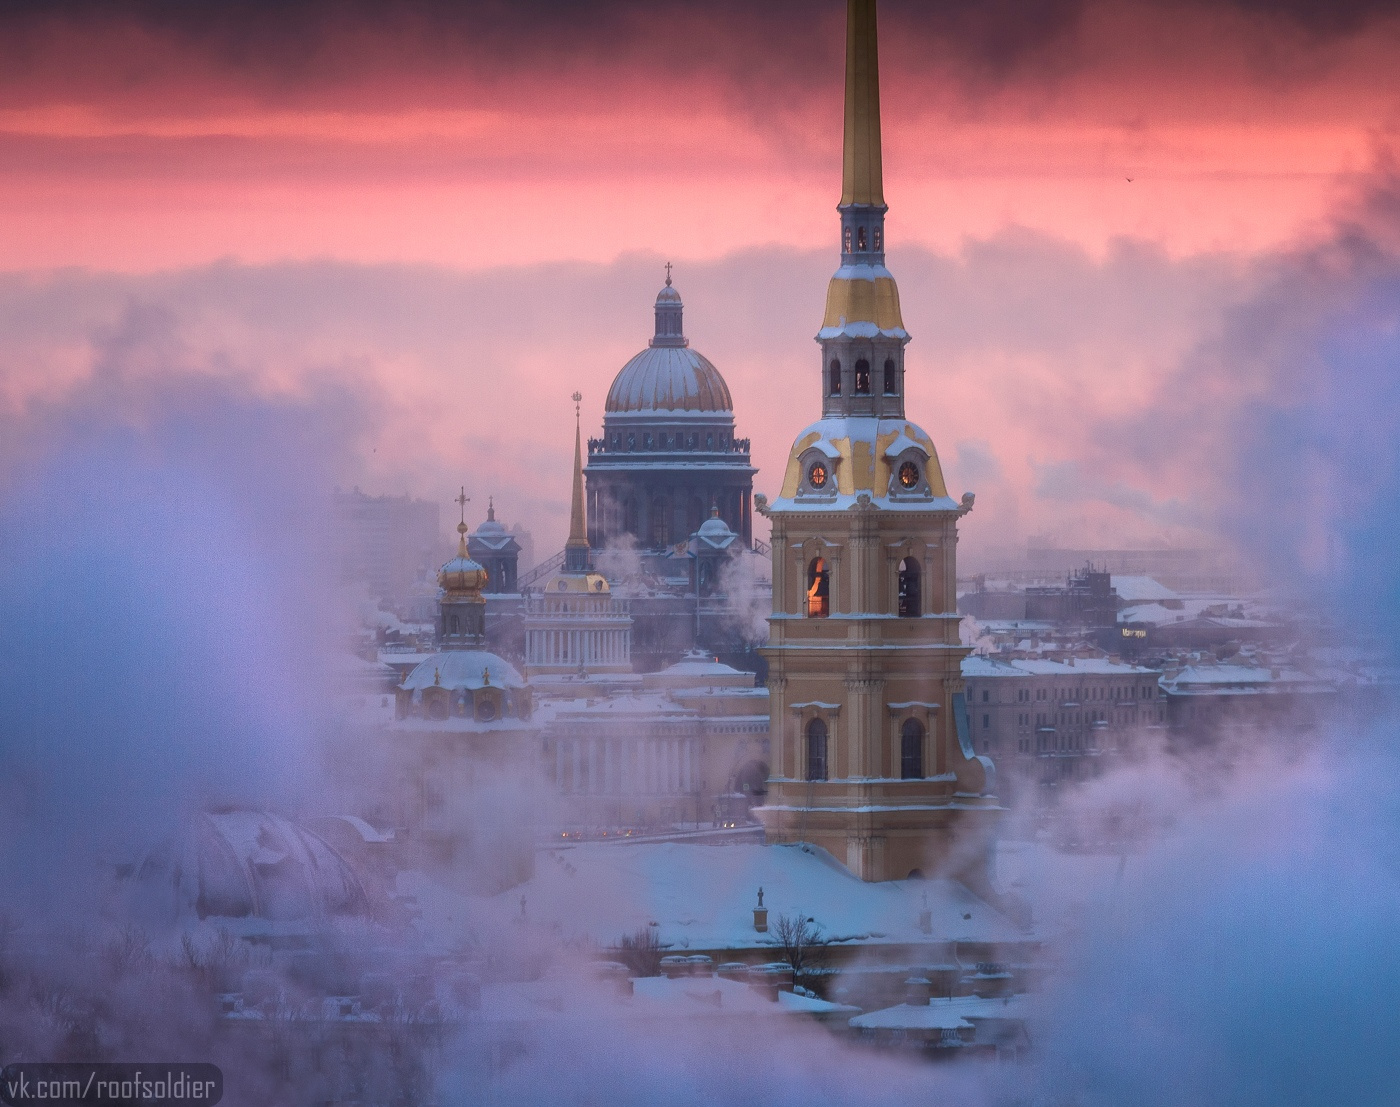 Мороз в Петербурге Санкт-Петербург город закат зима снег мороз Россия пейзаж дым рассвет архитектура церковь храм